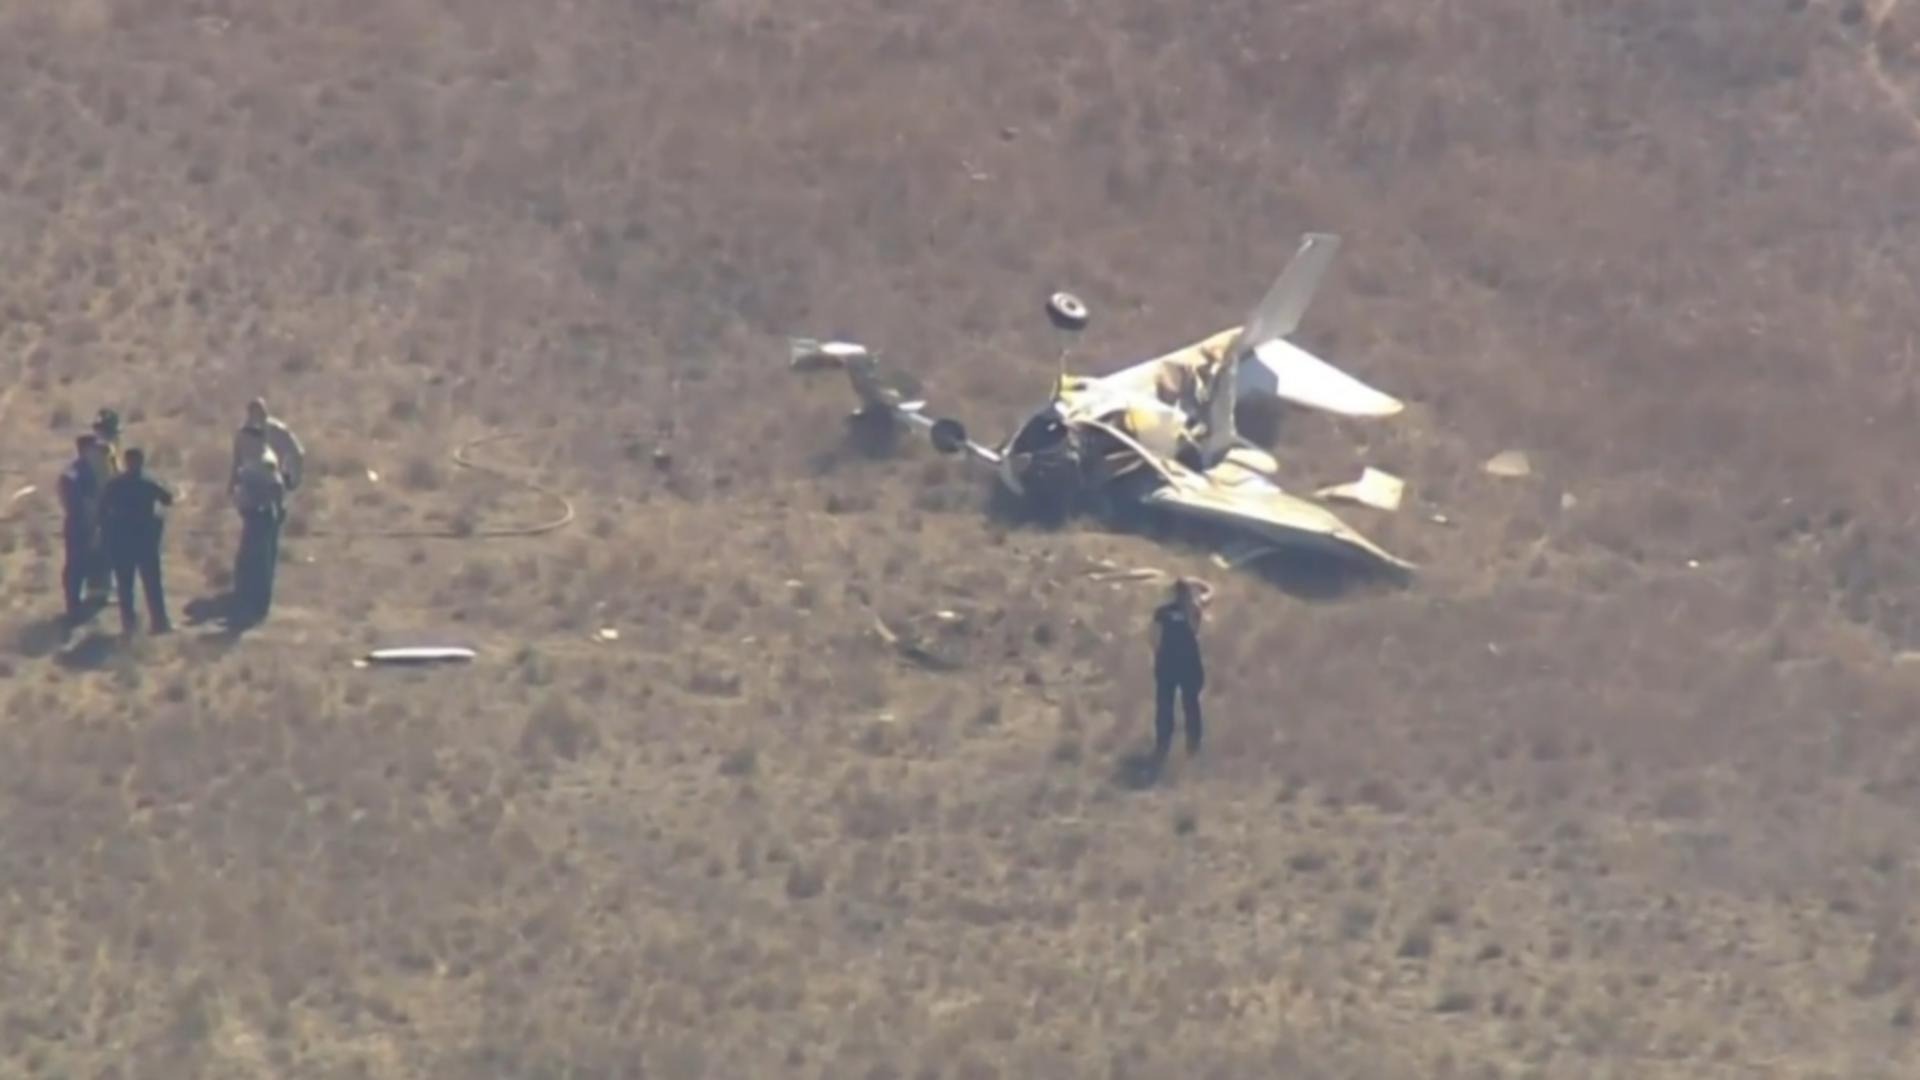 Tragedie aviatică - două avioane s-au ciocnit în zbor, apoi s-au prăbușit